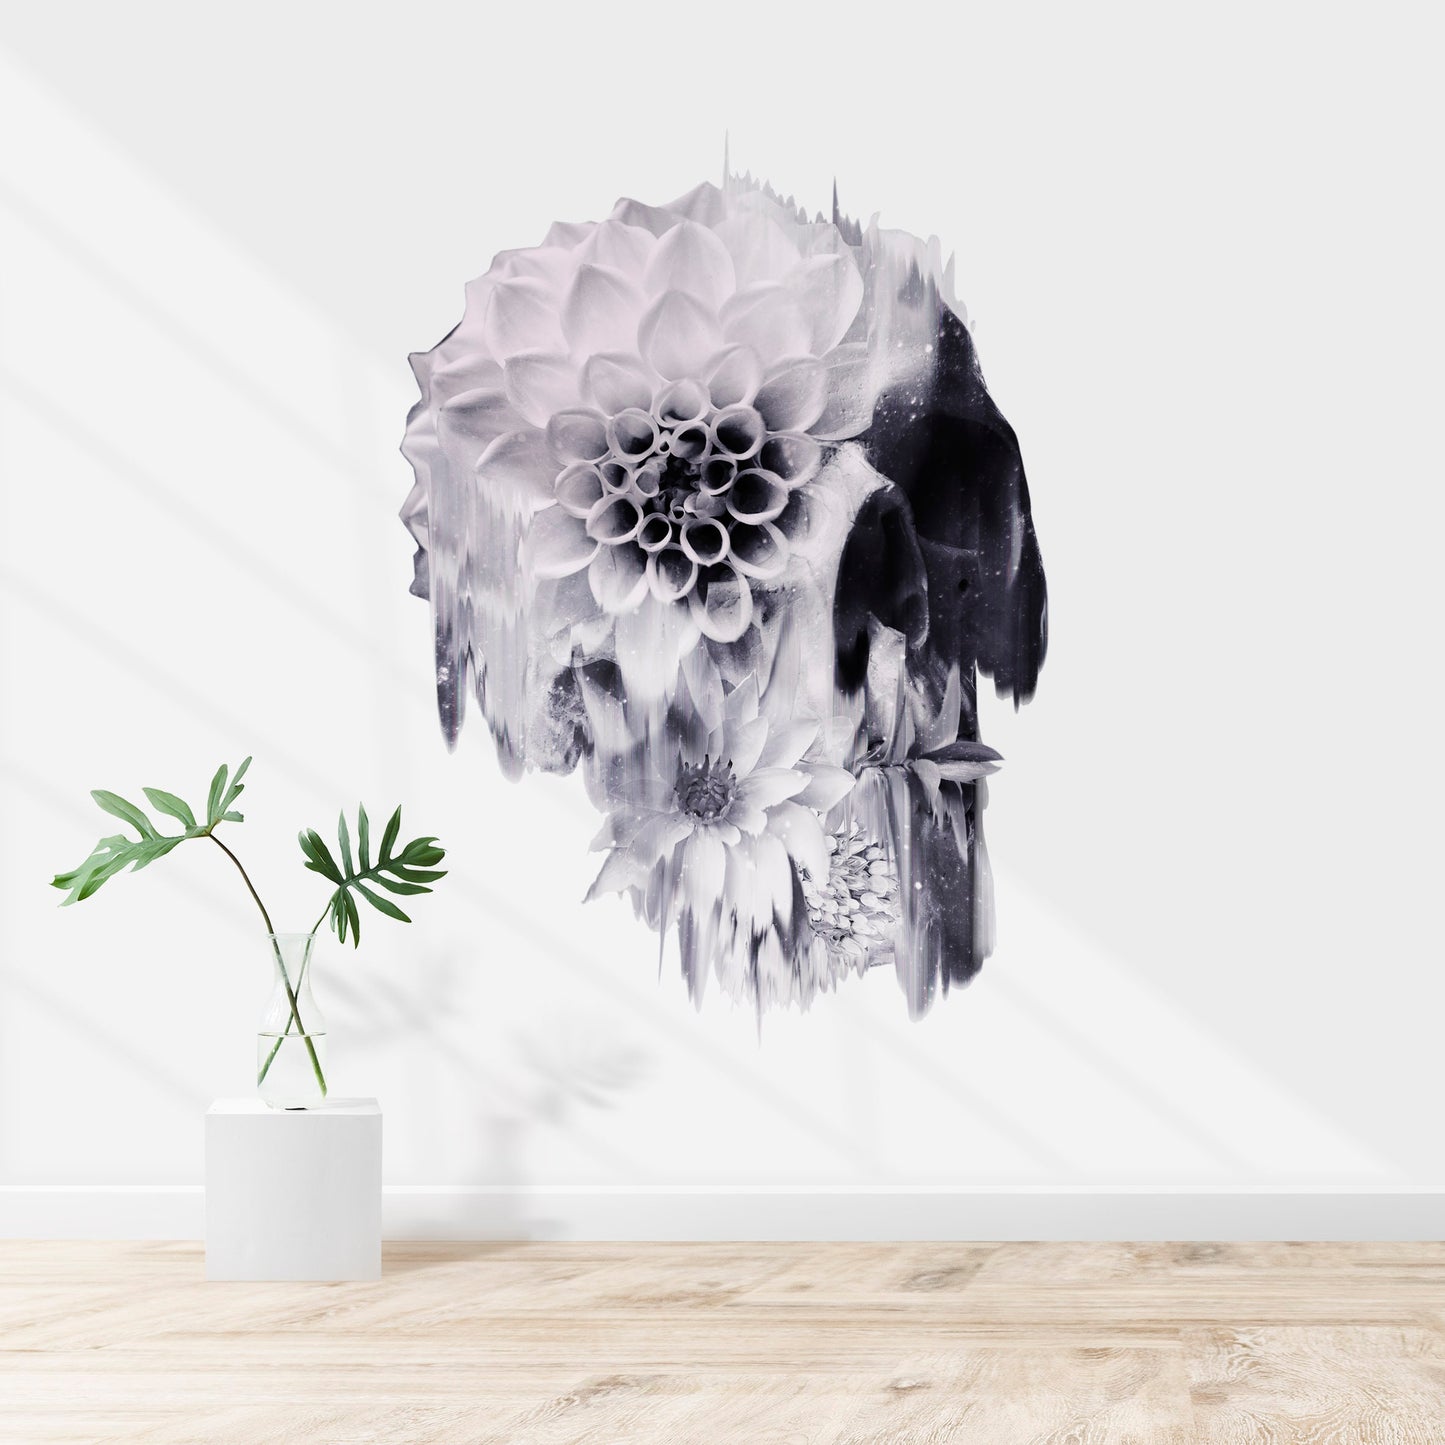 Skull Wall Sticker, Flower Skull Art Wall Decal, Vinyl Sugar Skull Home Decor, Gothic Skull Wall Art Gift, Floral Sugar Skull Art Wall Decal